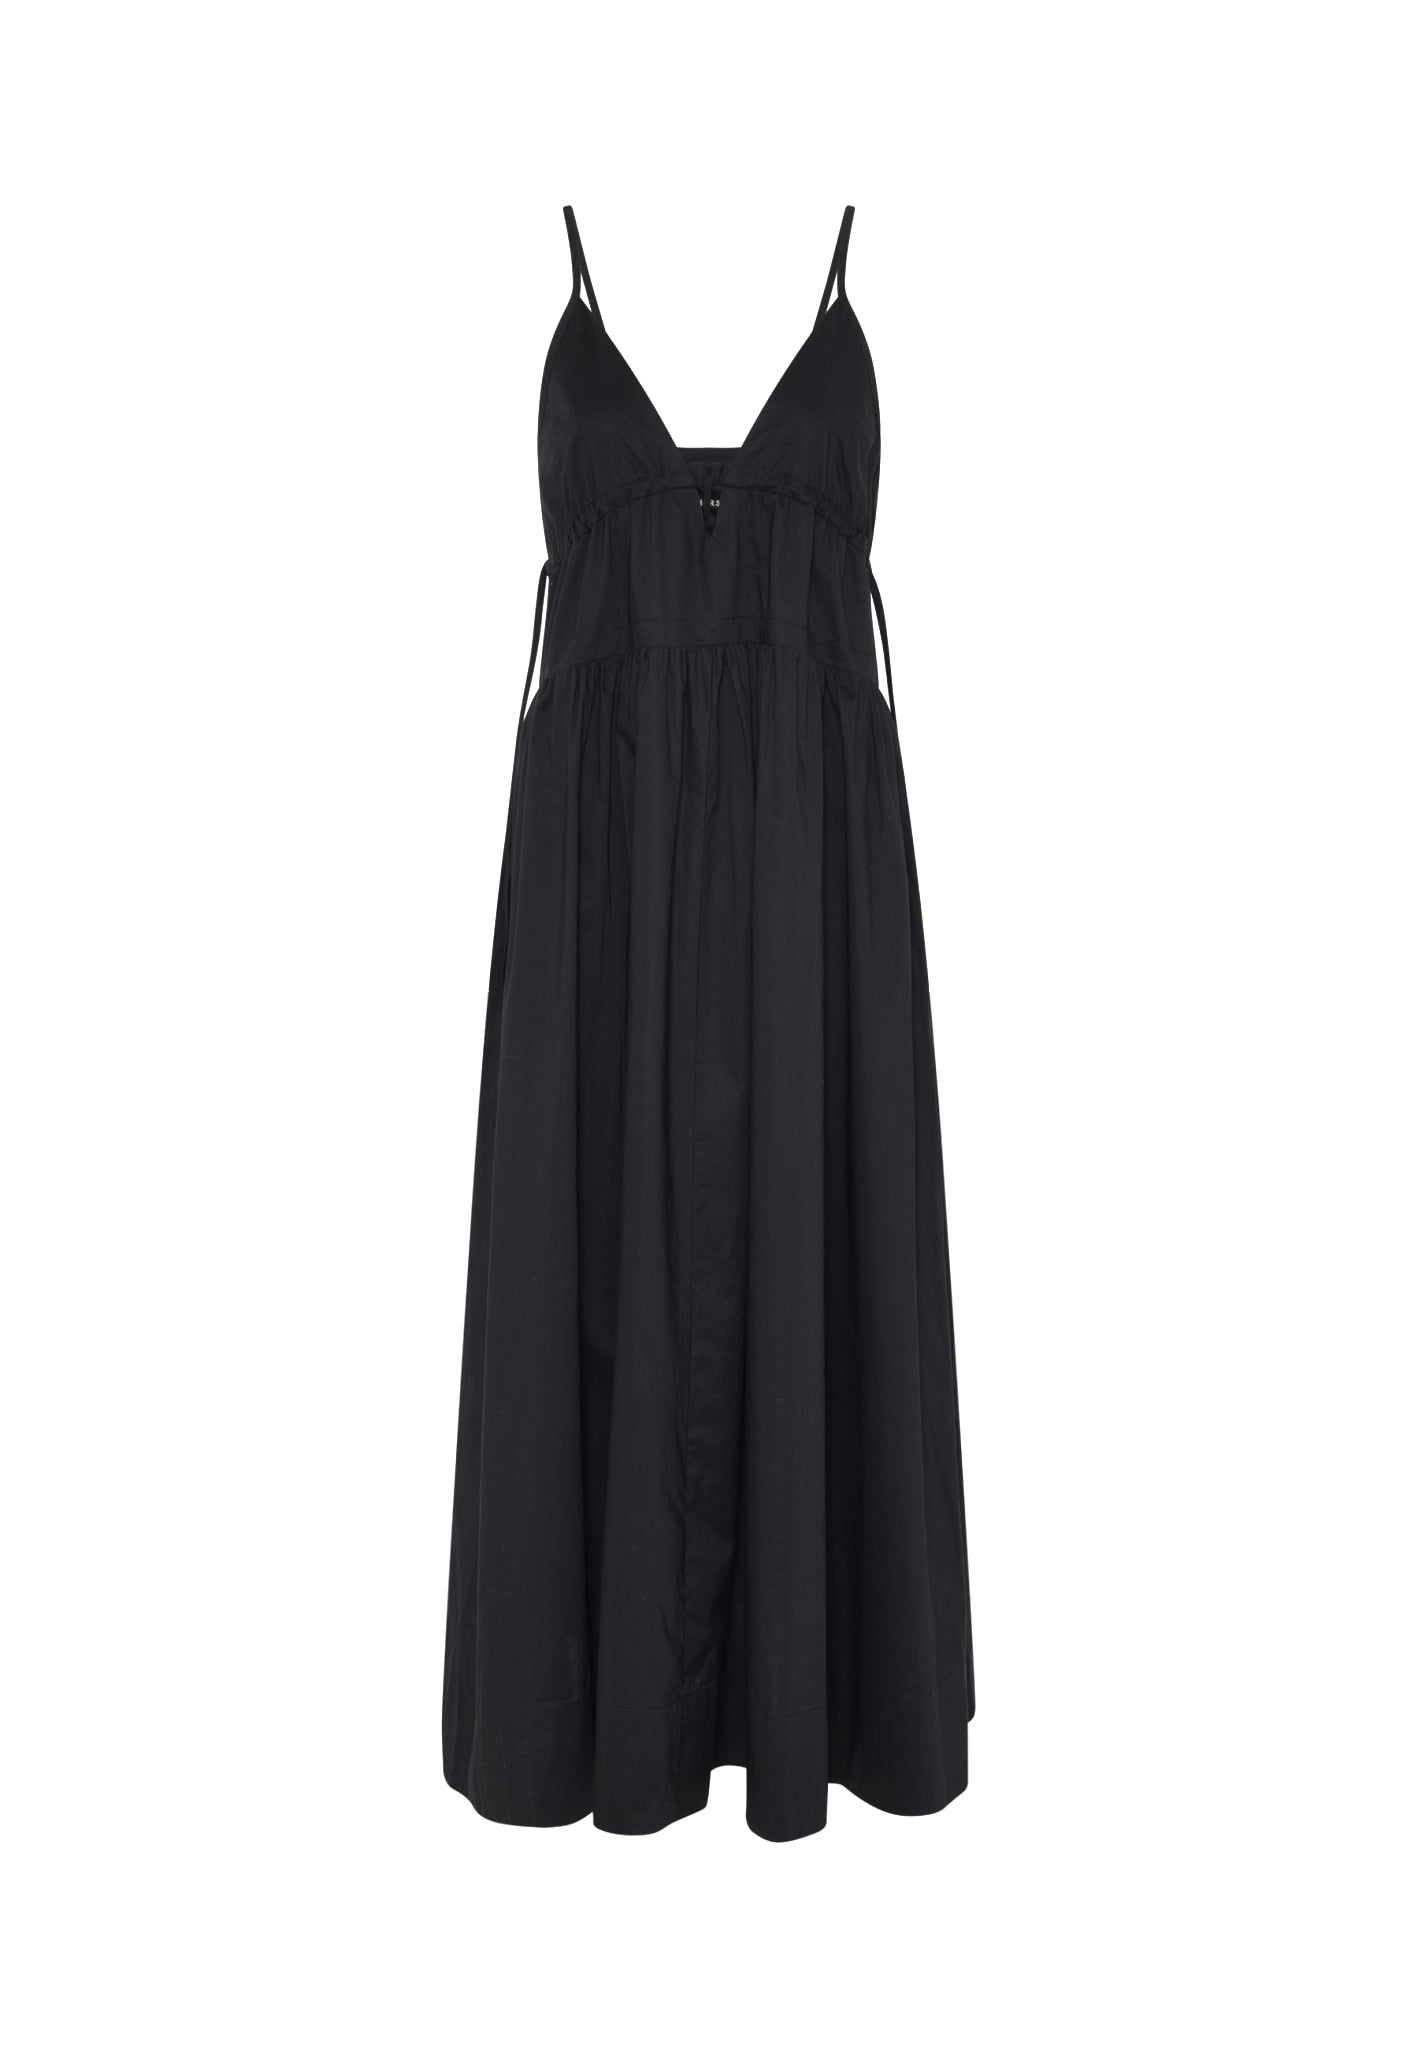 Herskind Miranda Dress In Black